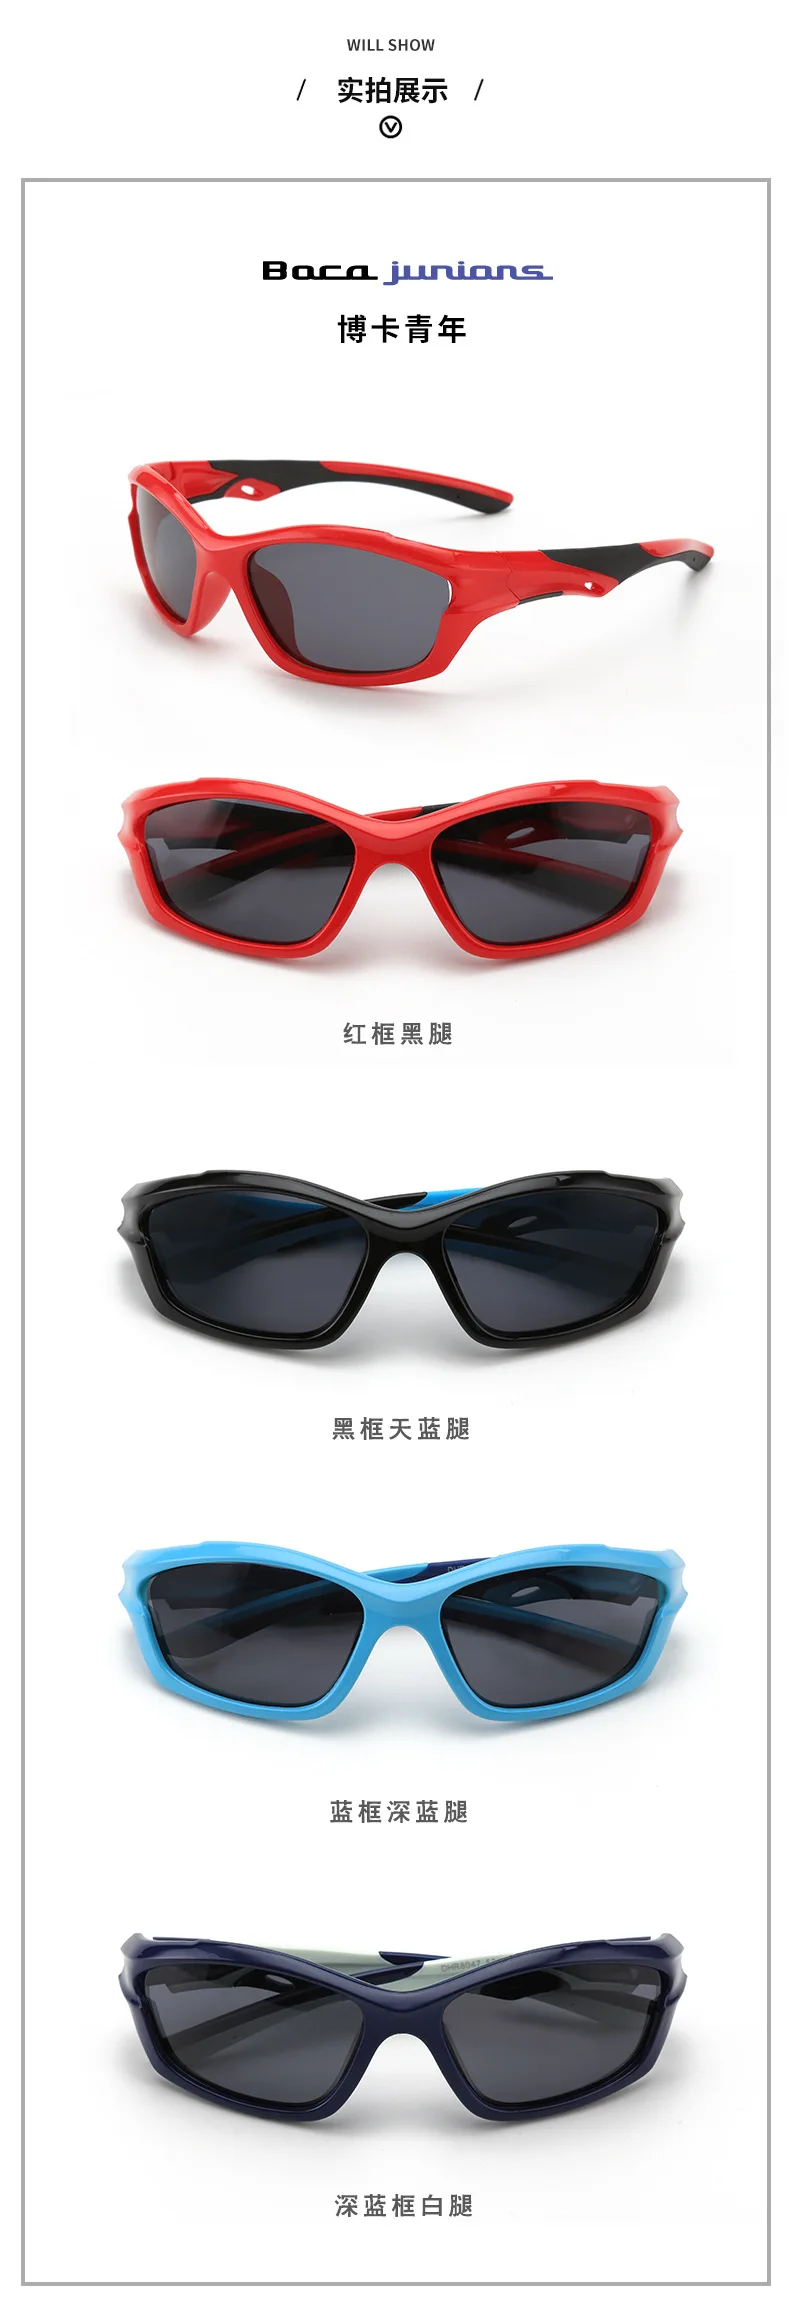 Квадратные Солнцезащитные очки для детей, поляризованные очки для мальчиков и девочек 1, 2, 3 лет, детские очки TR90, гибкие очки для путешествия, подарок UV400